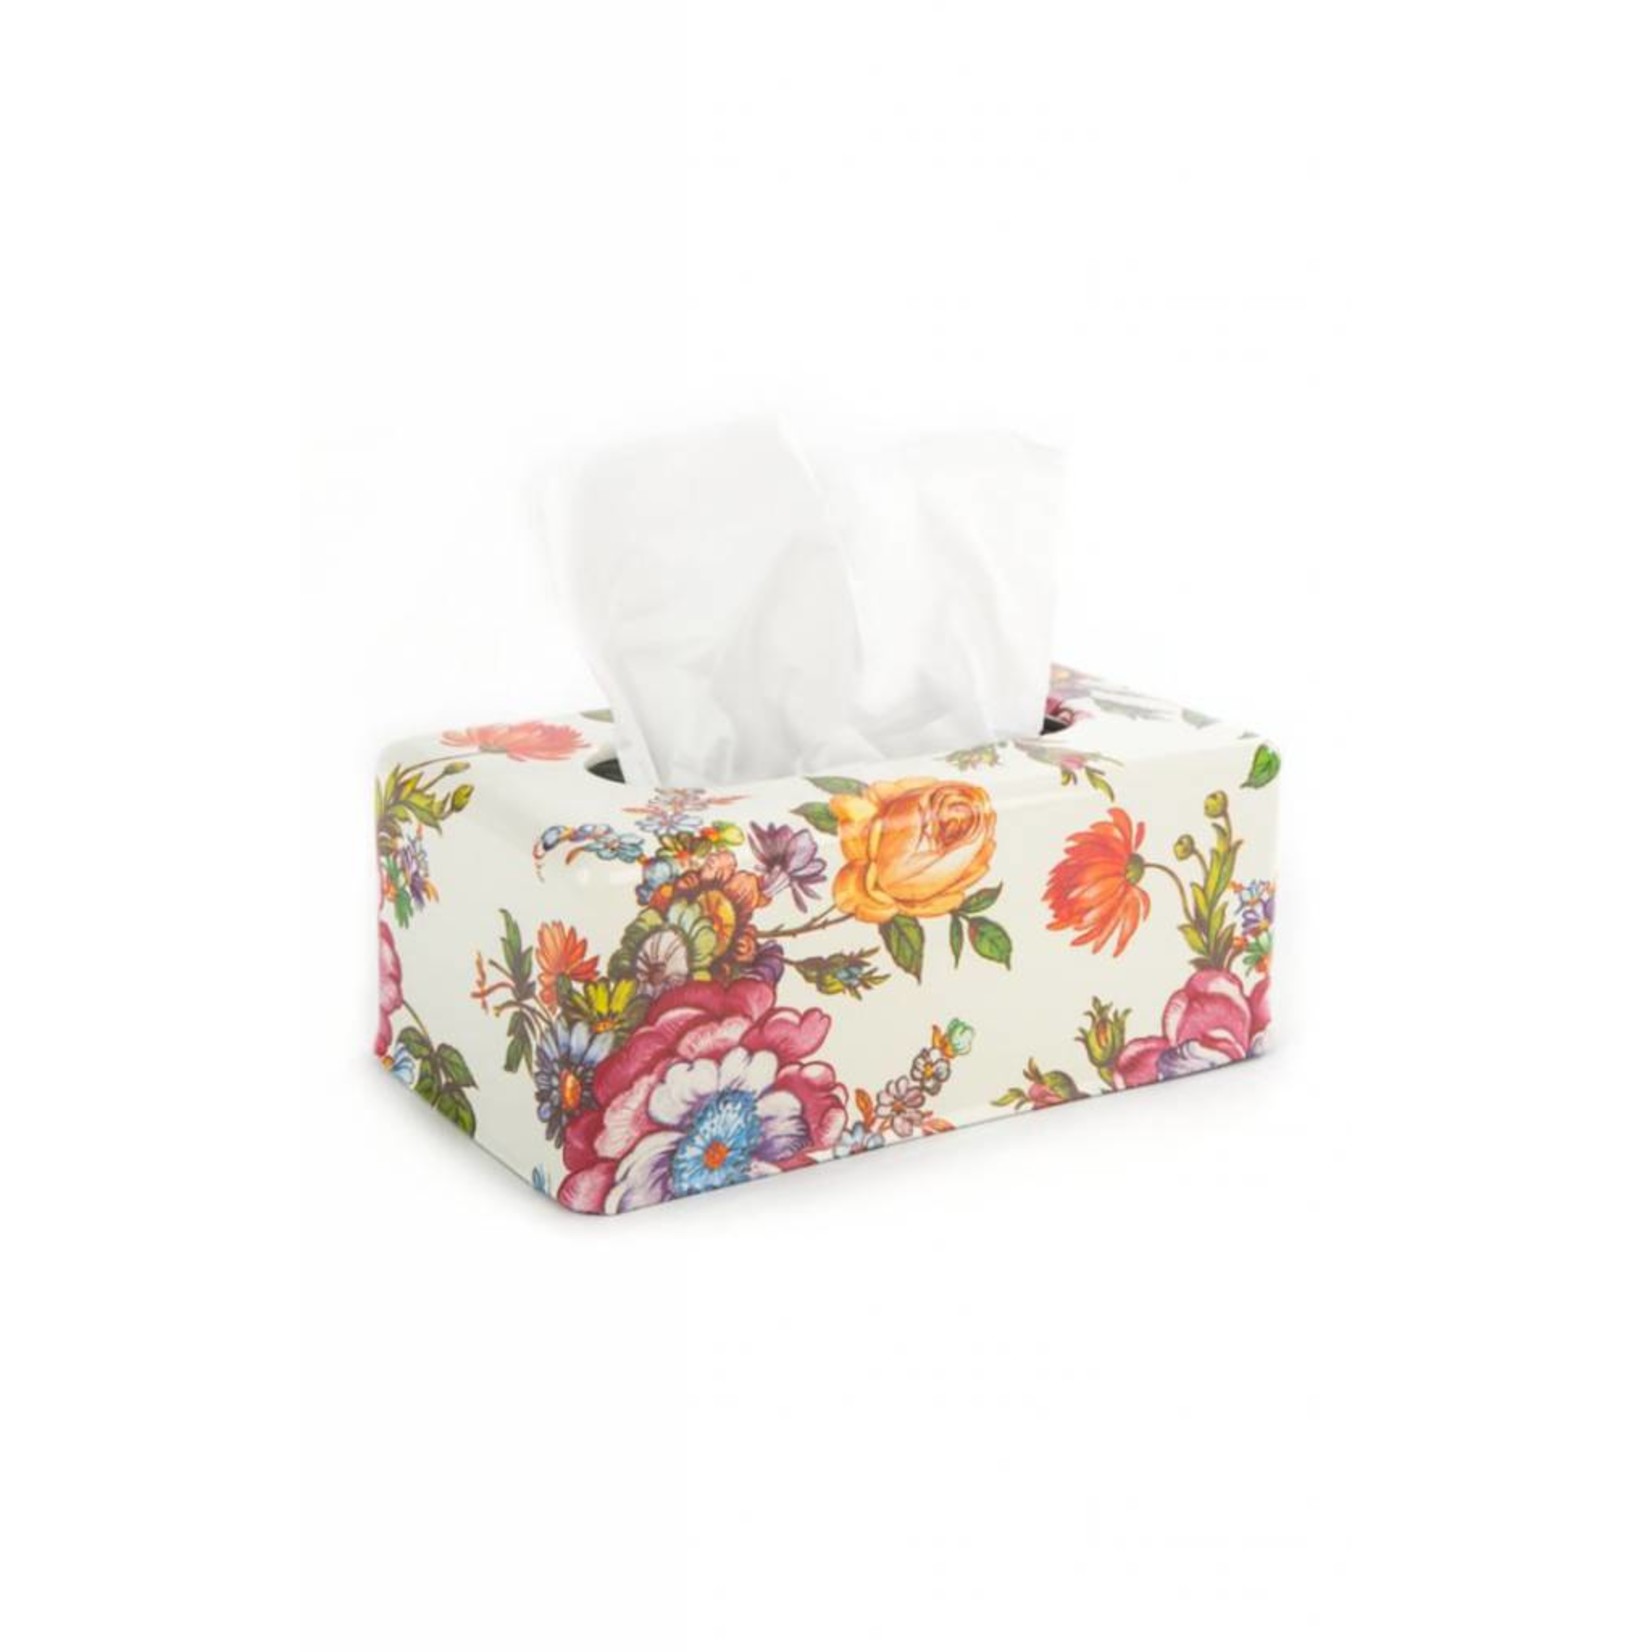 MacKenzie Childs Flower Market Standard Tissue Box Holder